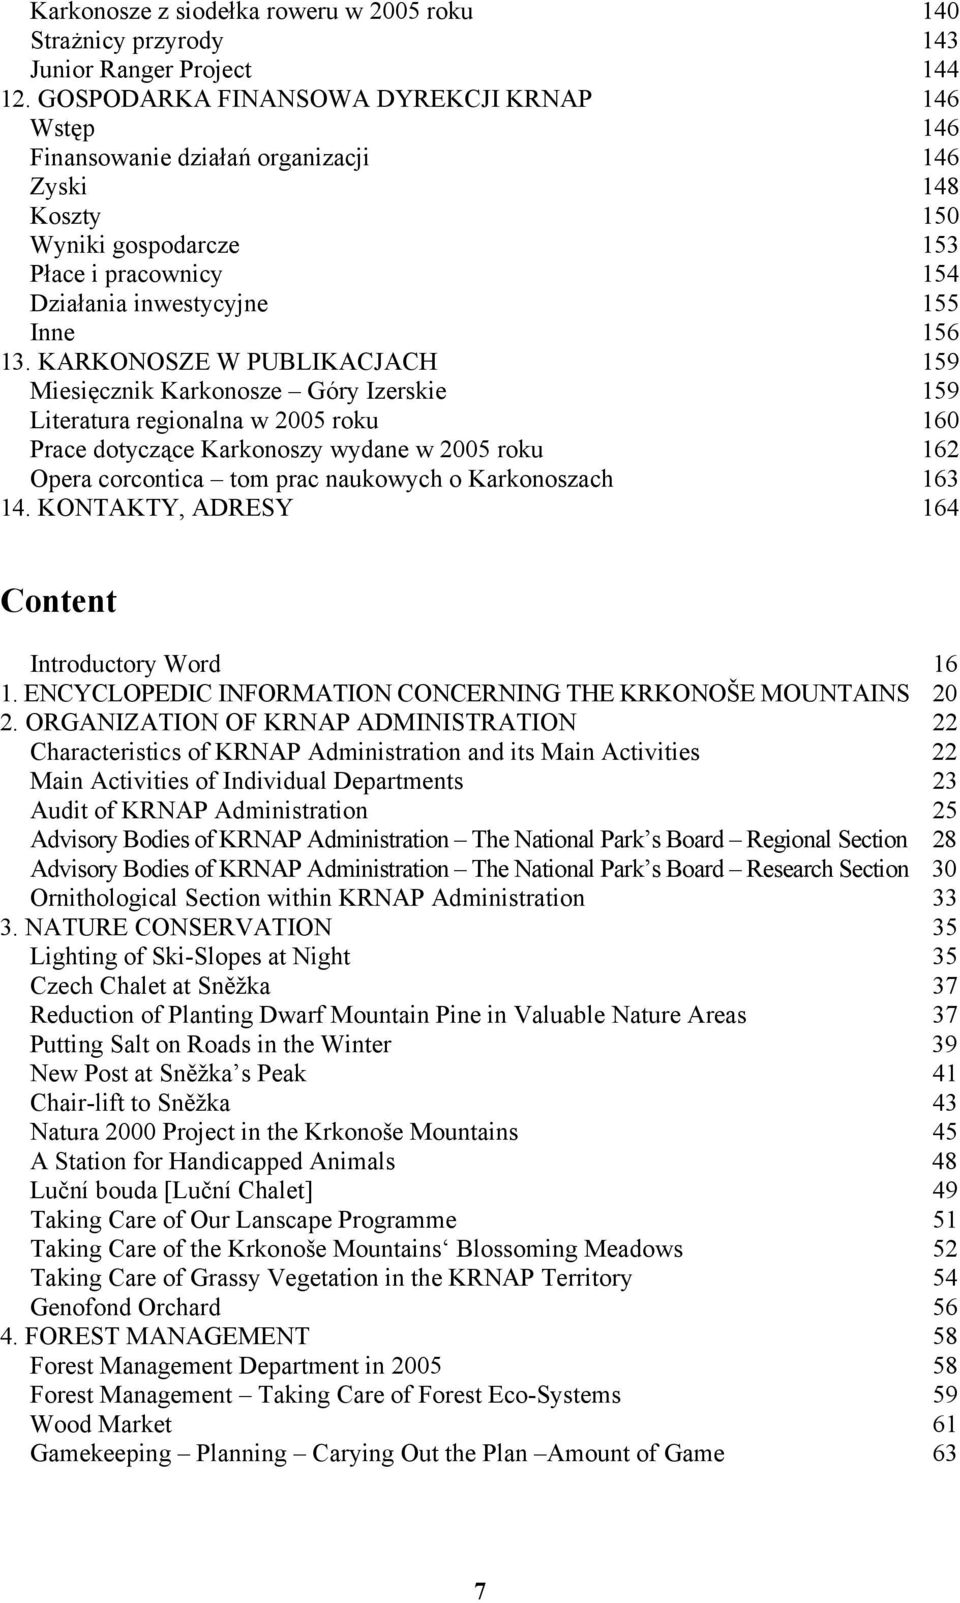 KARKONOSZE W PUBLIKACJACH 159 Miesięcznik Karkonosze Góry Izerskie 159 Literatura regionalna w 2005 roku 160 Prace dotyczące Karkonoszy wydane w 2005 roku 162 Opera corcontica tom prac naukowych o